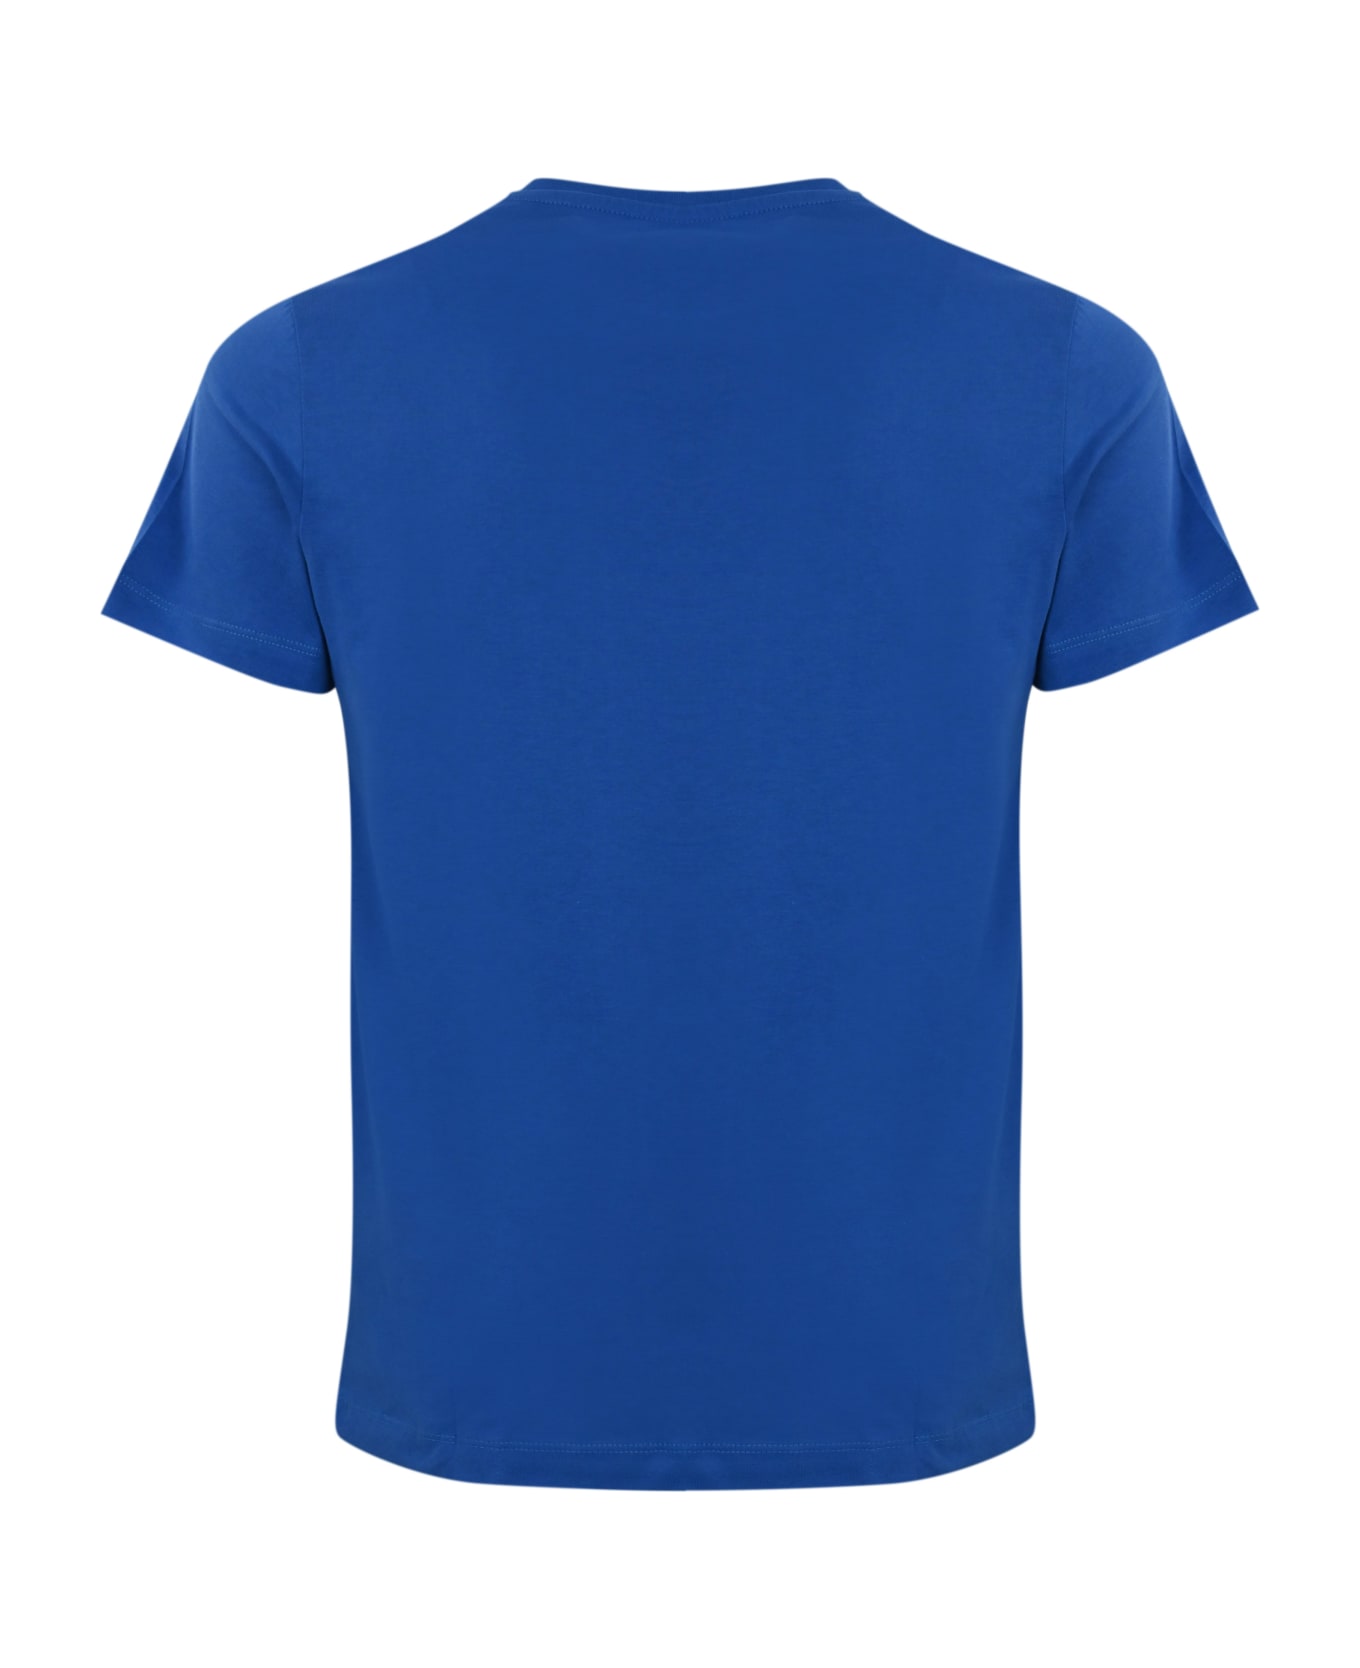 K-Way T-shirt With Logo - Blue royal marine シャツ